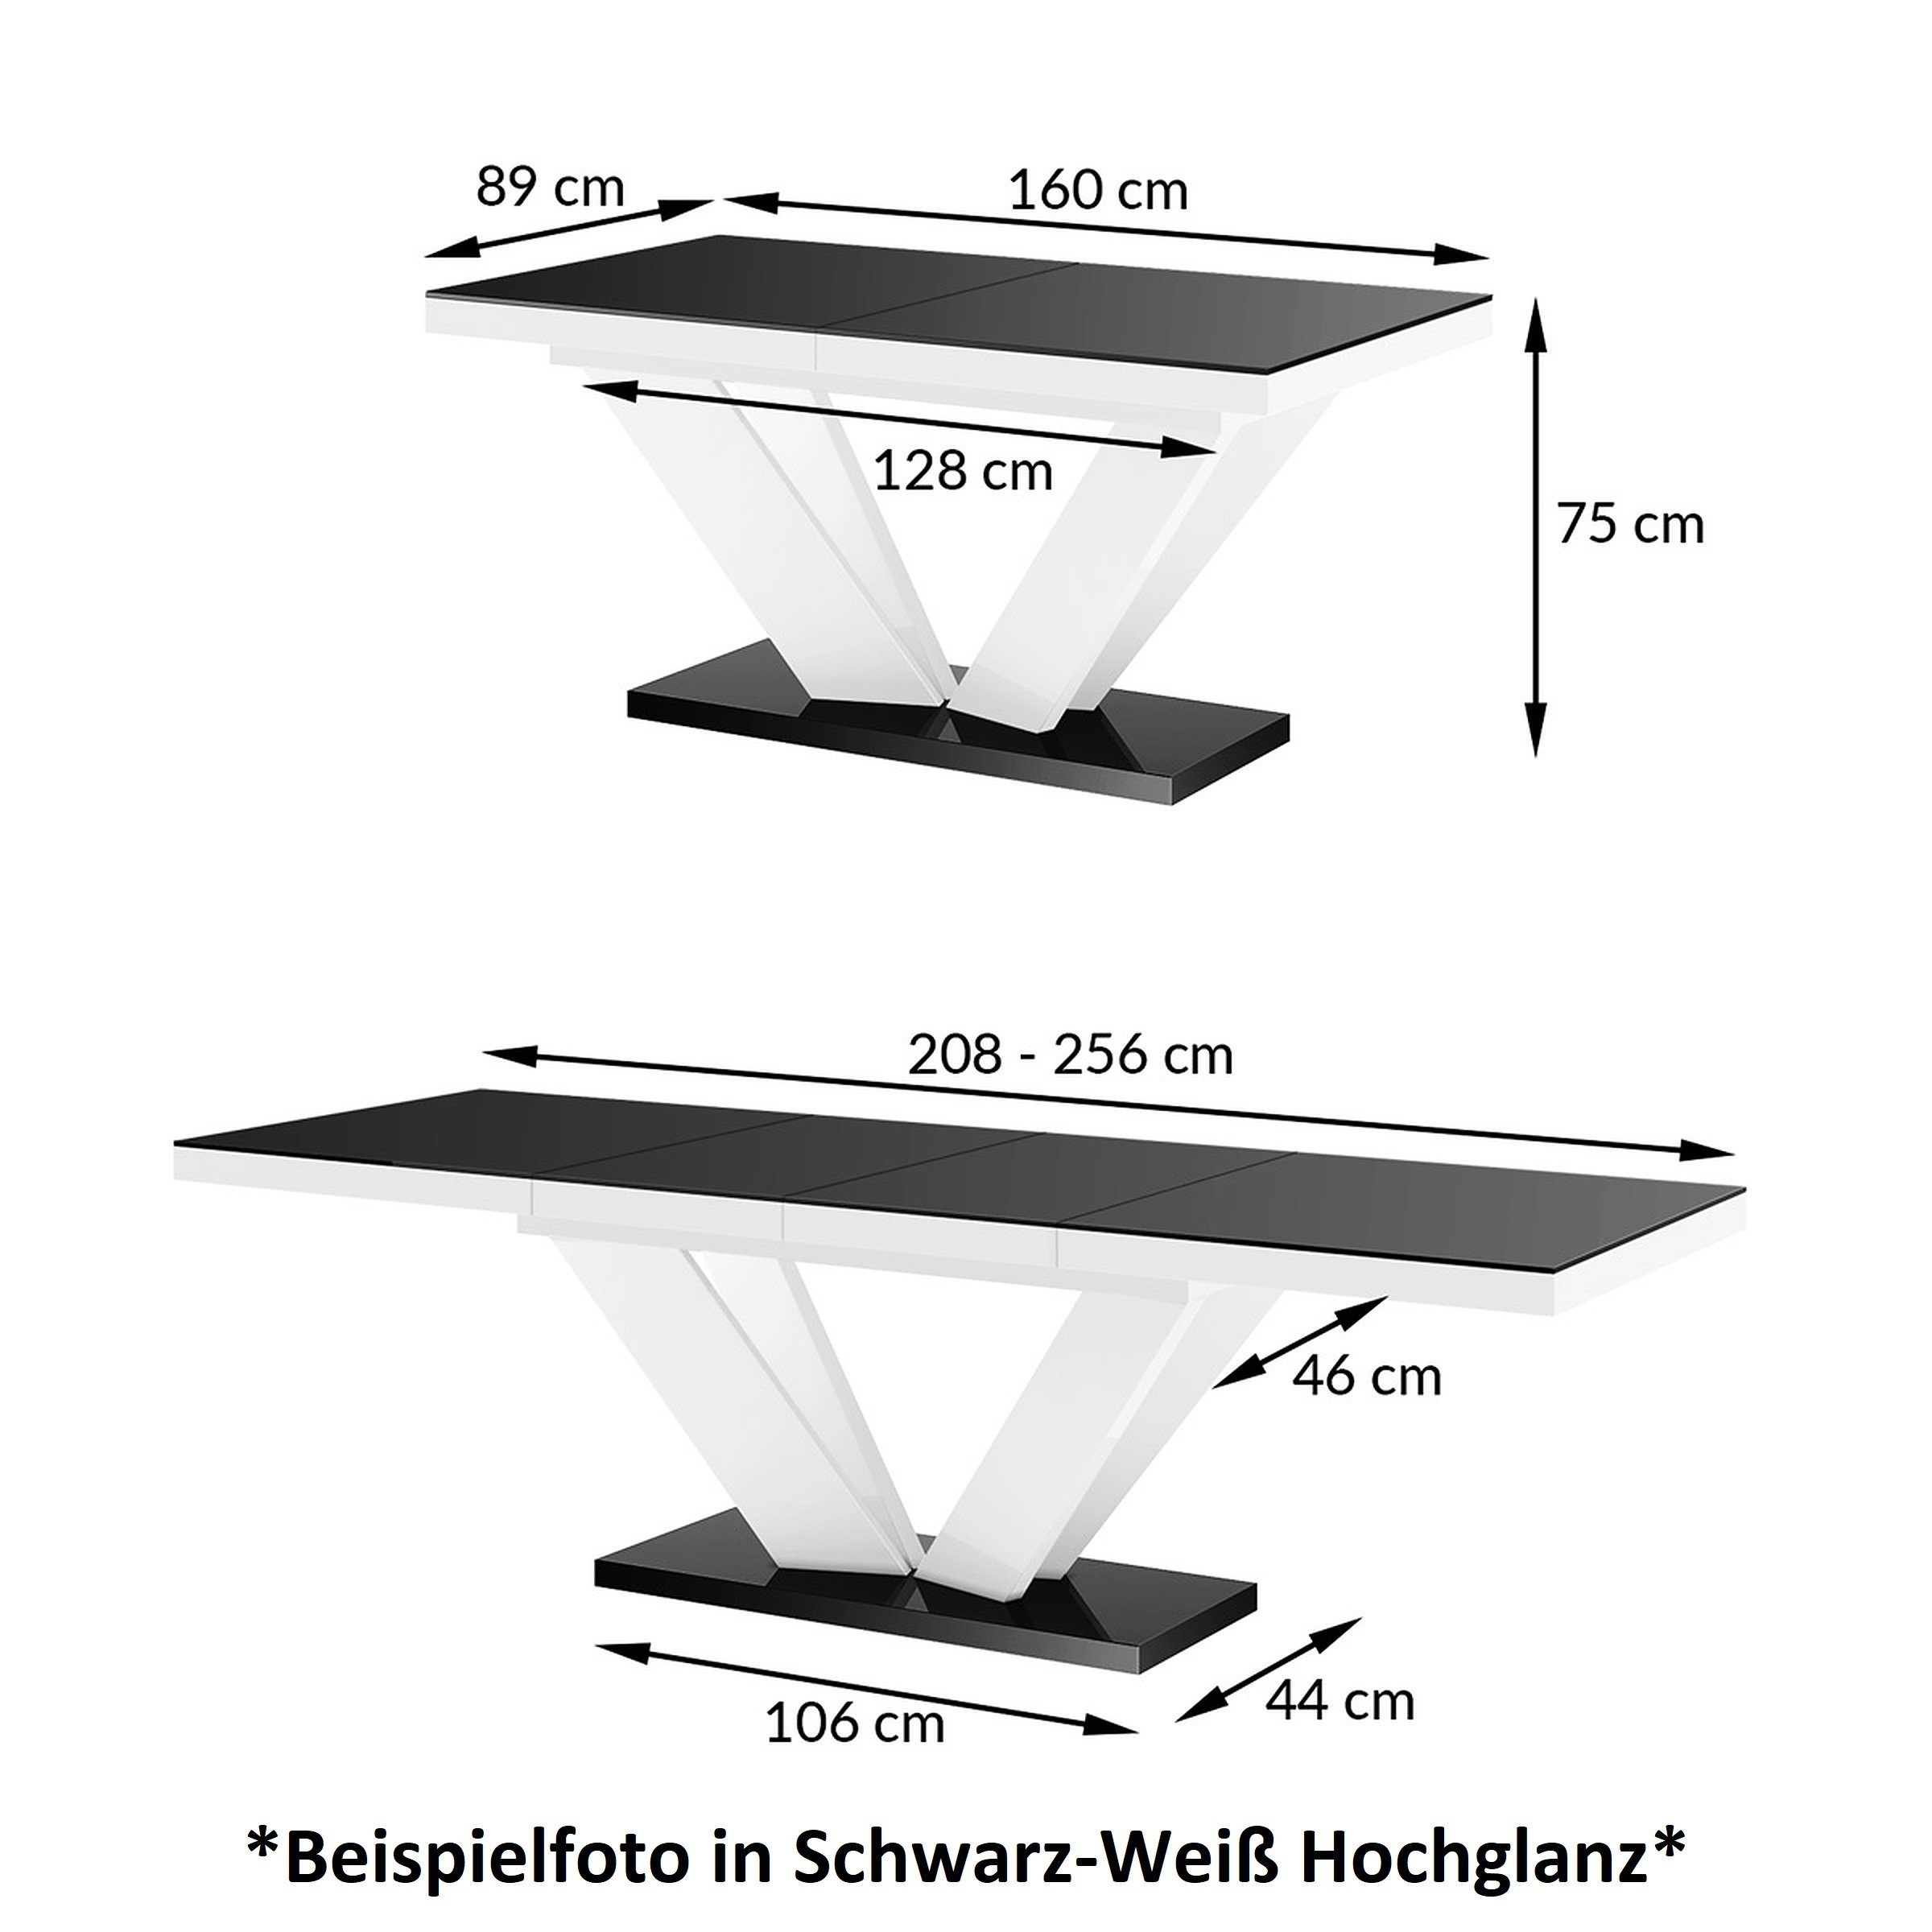 designimpex Esstisch Design Weiß ausziehbar HEU-111 - 160-256cm Hochglanz Eiche Tisch Natur